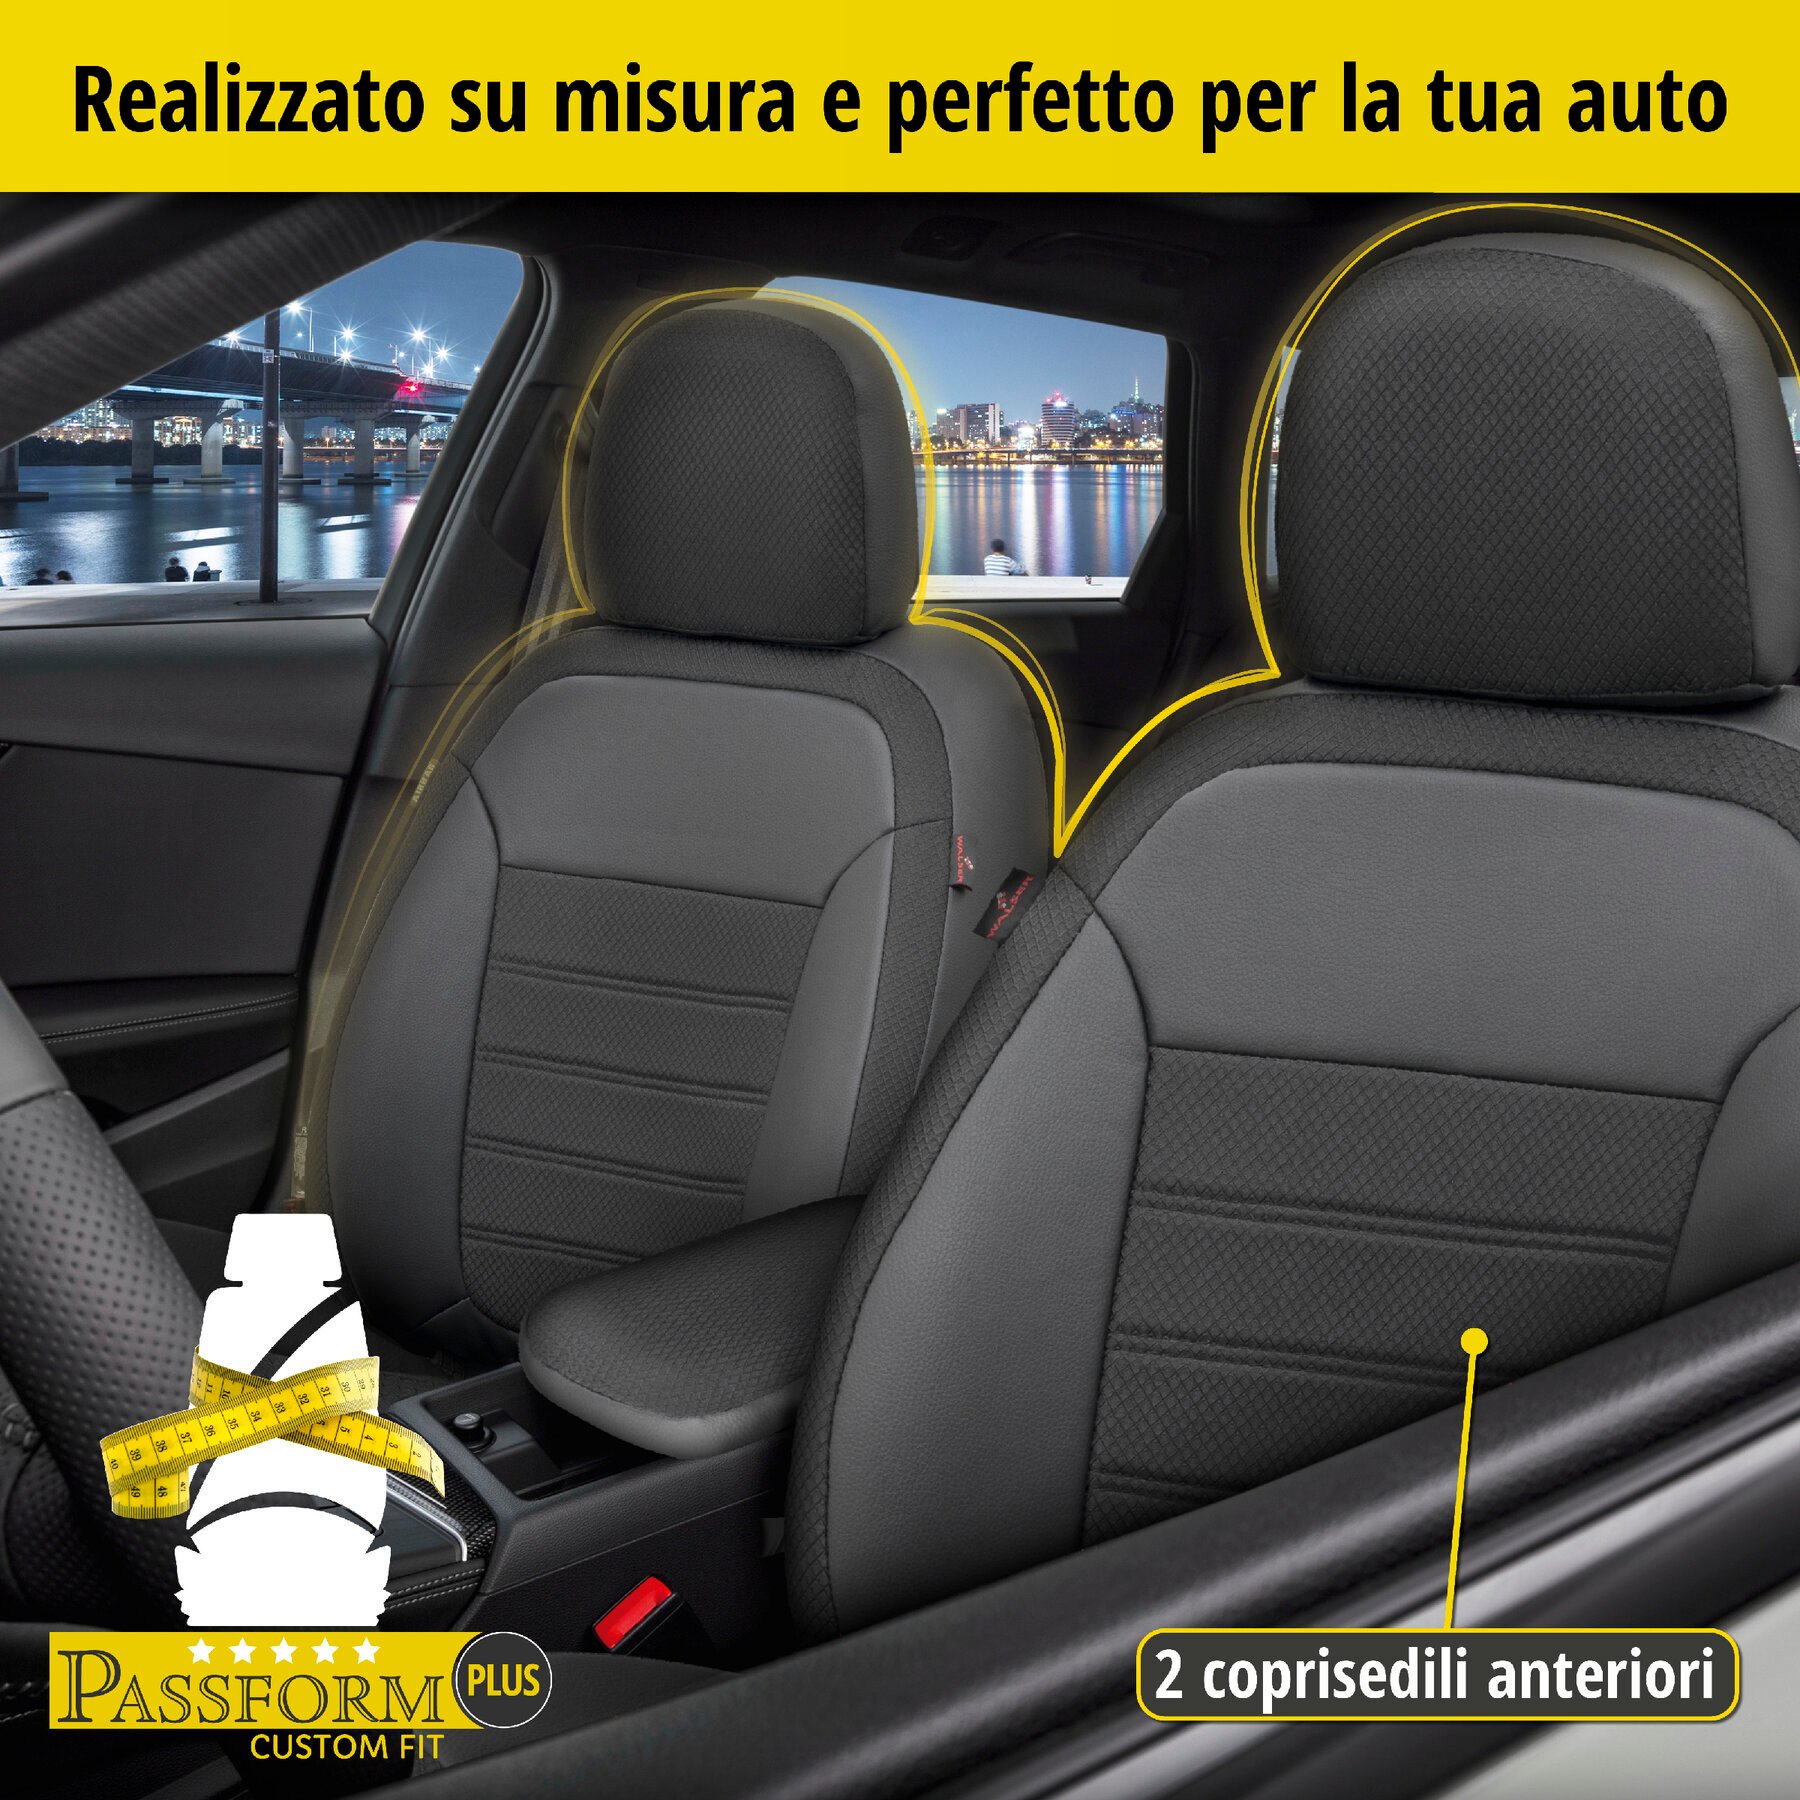 Coprisedili Aversa per Dacia Sandero II 10/2010-Oggi, 2 coprisedili per sedili normali